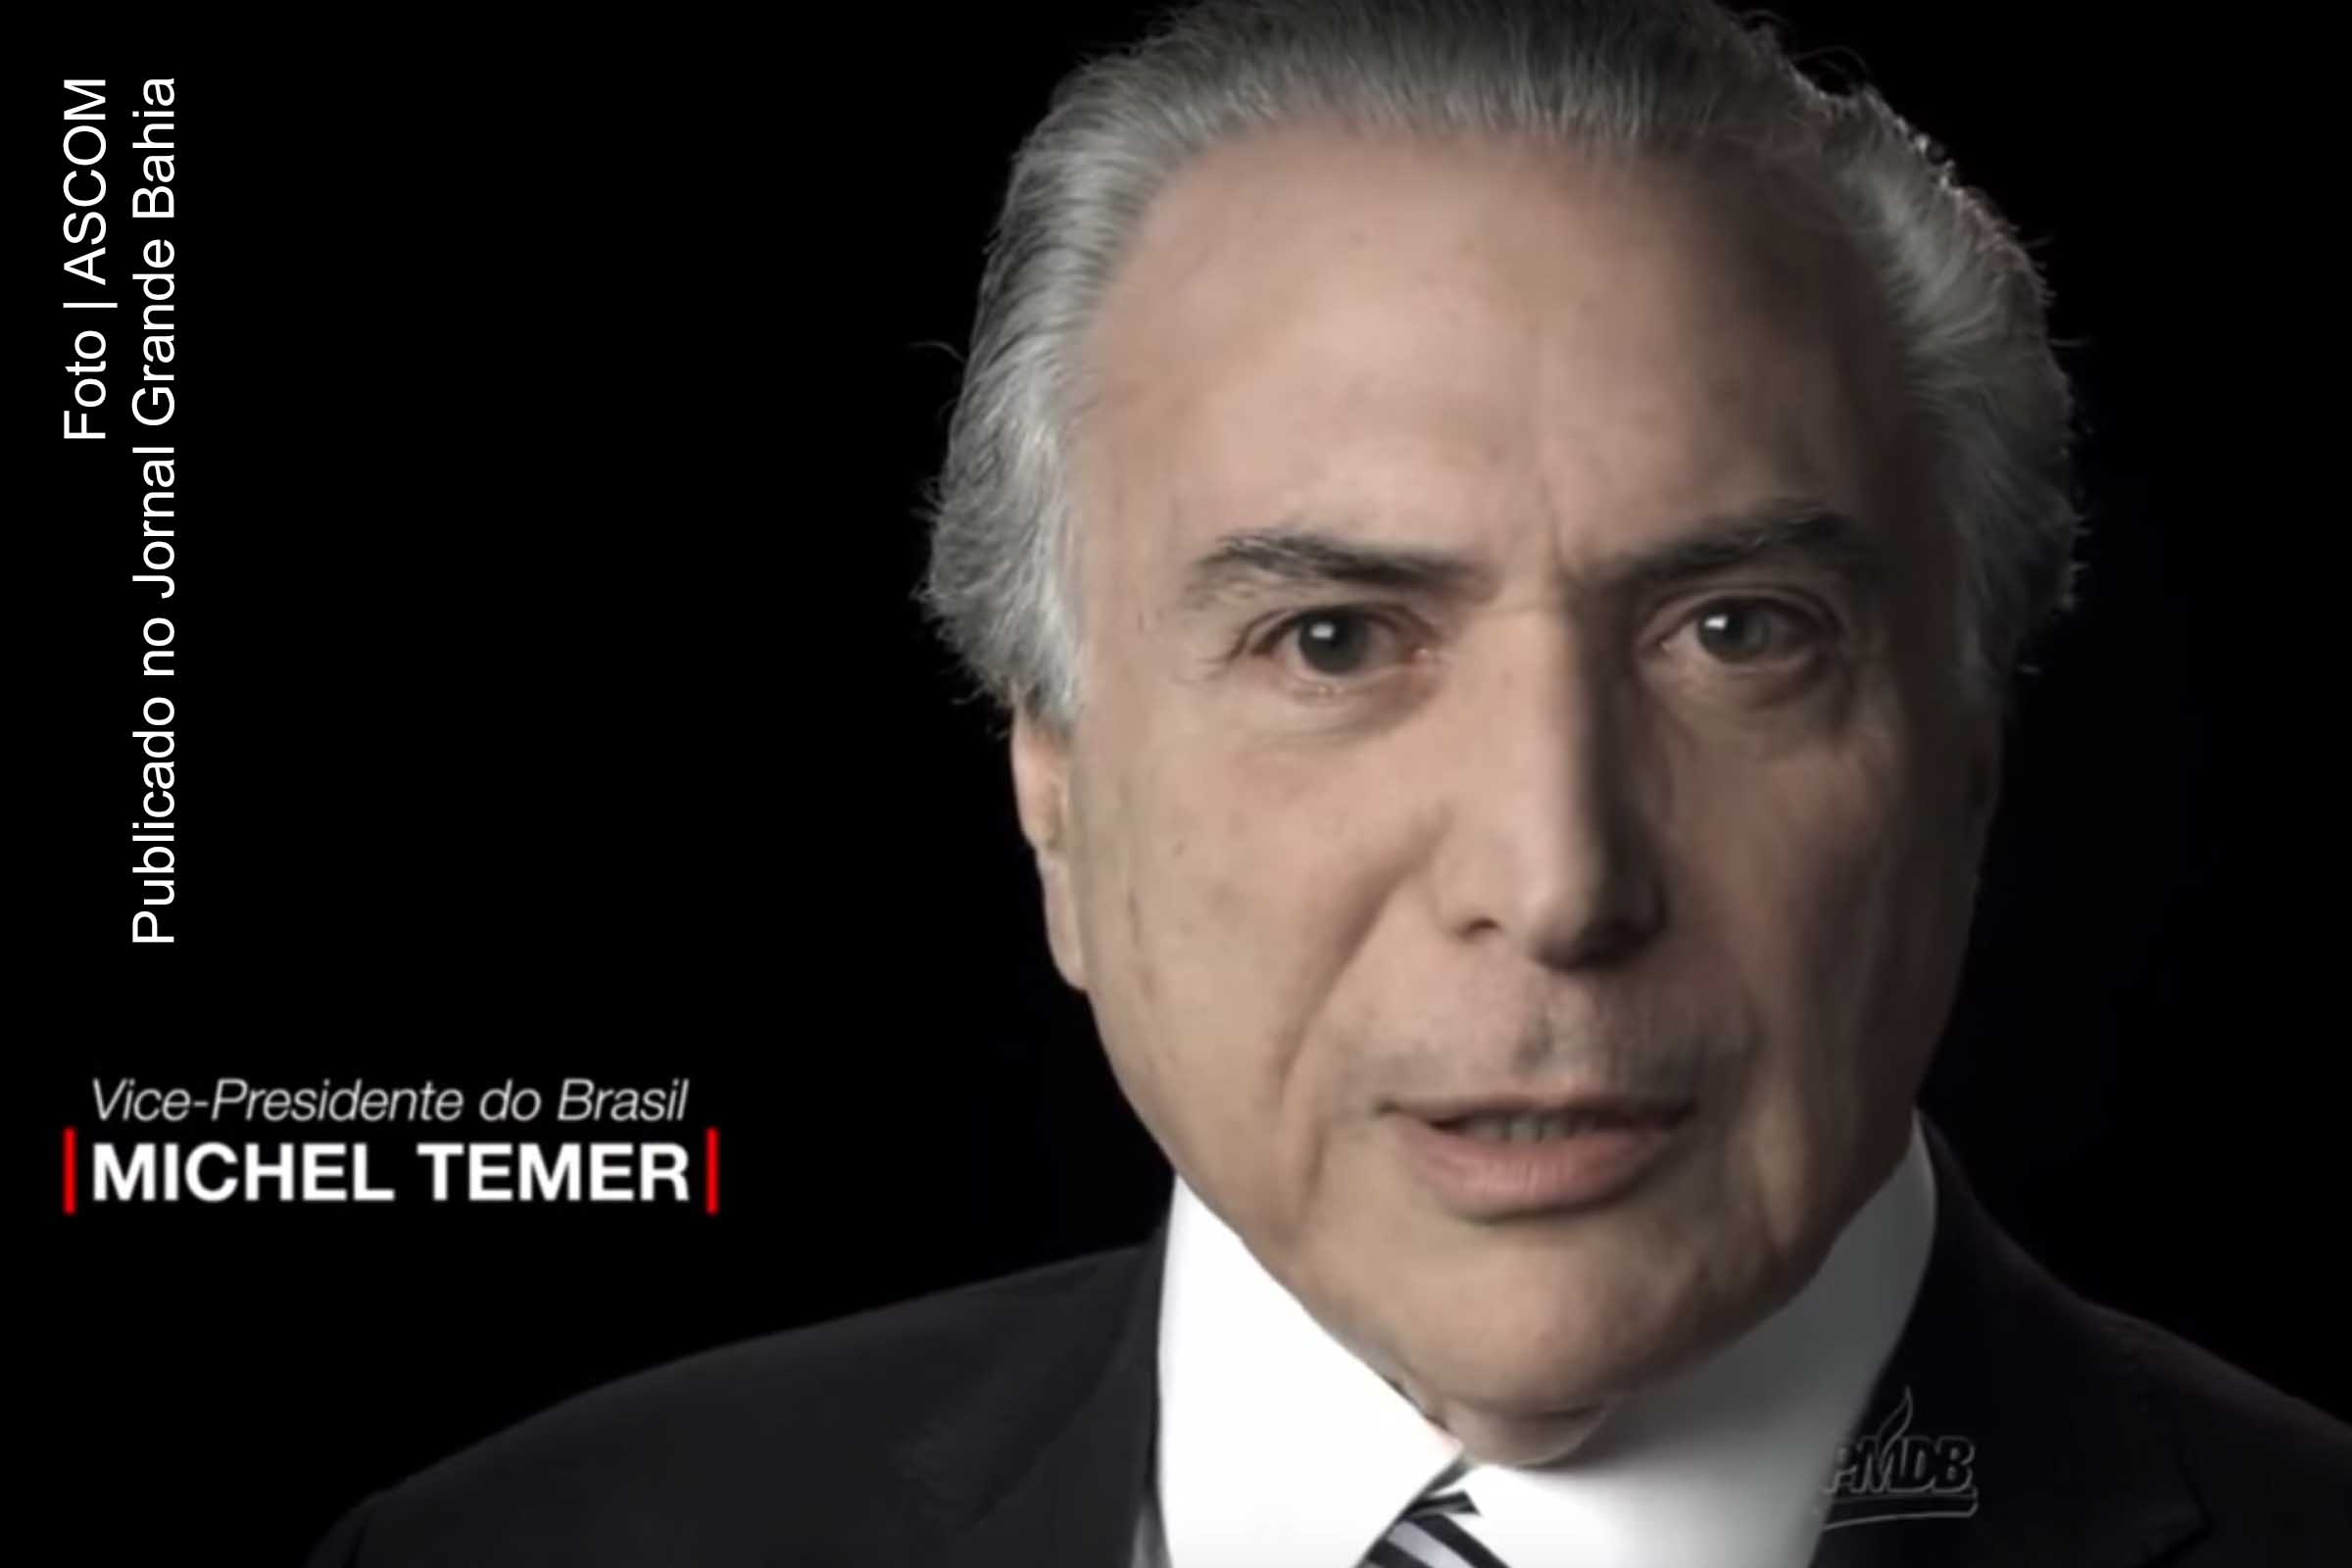 Michel Miguel Elias Temer Lulia é advogado, doutor em Direito, político, e presidente do Partido do Movimento Democrático Brasileiro (PMDB). Ele foi reeleito vice-presidente da República na chapa liderada por Dilma Rousseff (PT).